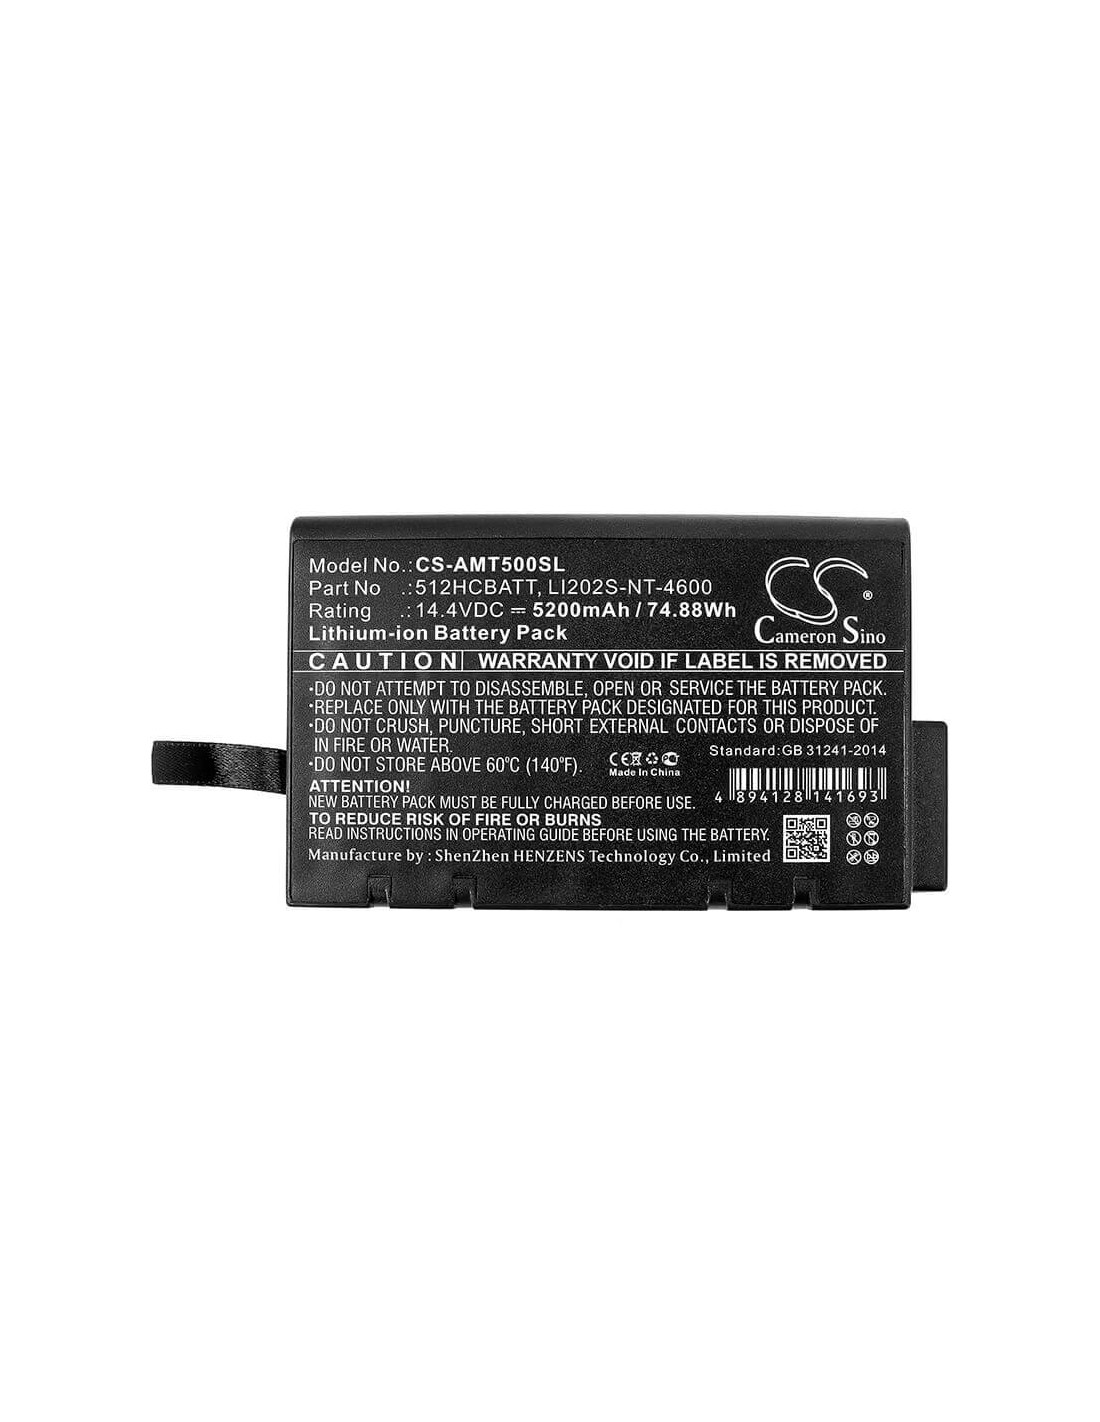 Battery for Anritsu, Nettest Cma-5000, Nettest Cma-5000a, Tsi 14.4V, 5200mAh - 74.88Wh